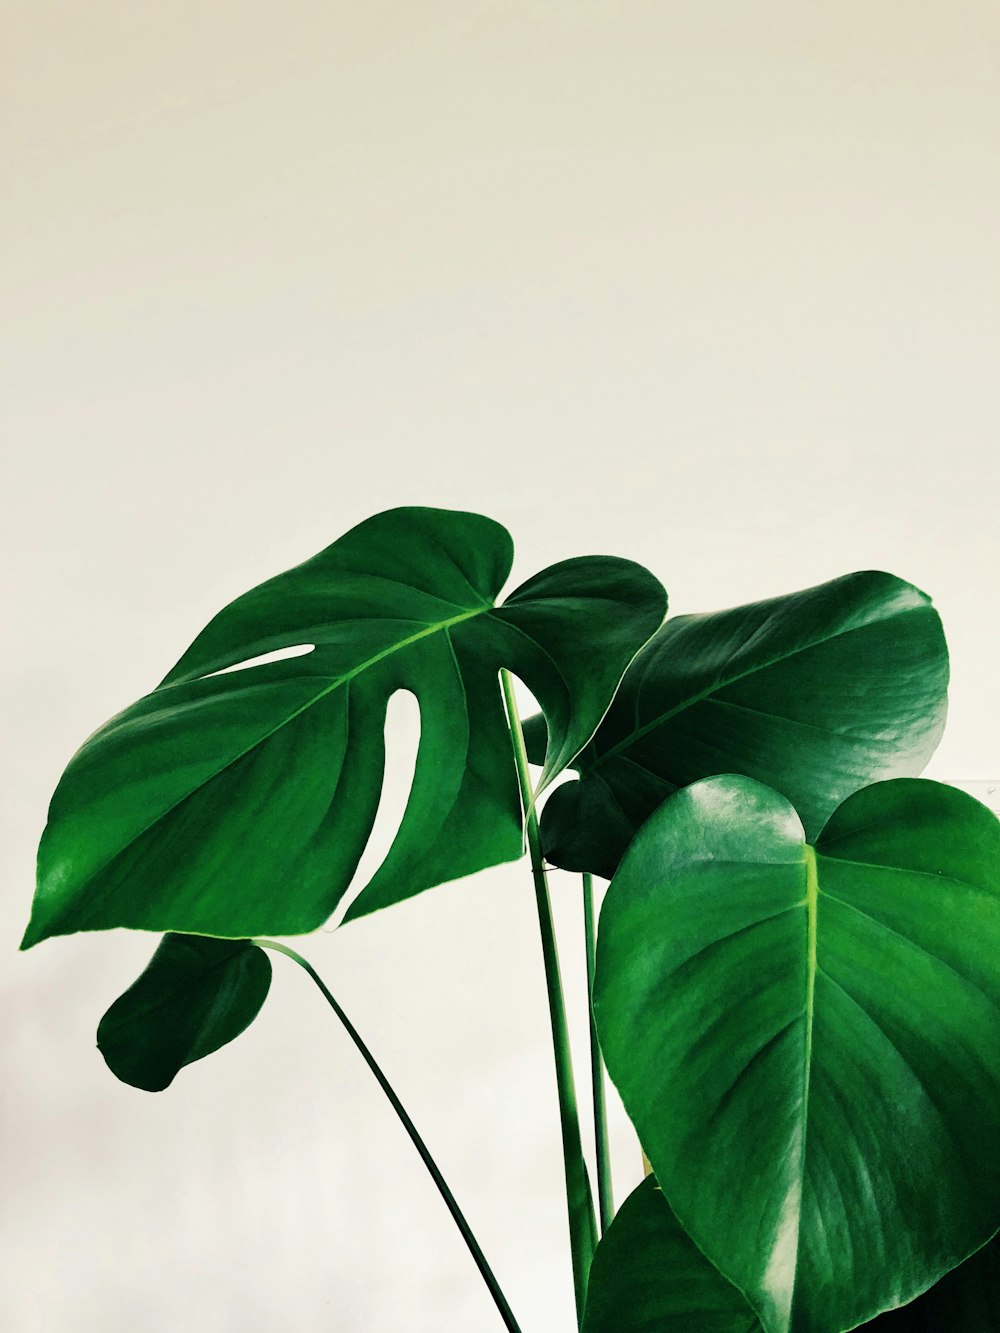 grüne Blätter auf weißem Hintergrund